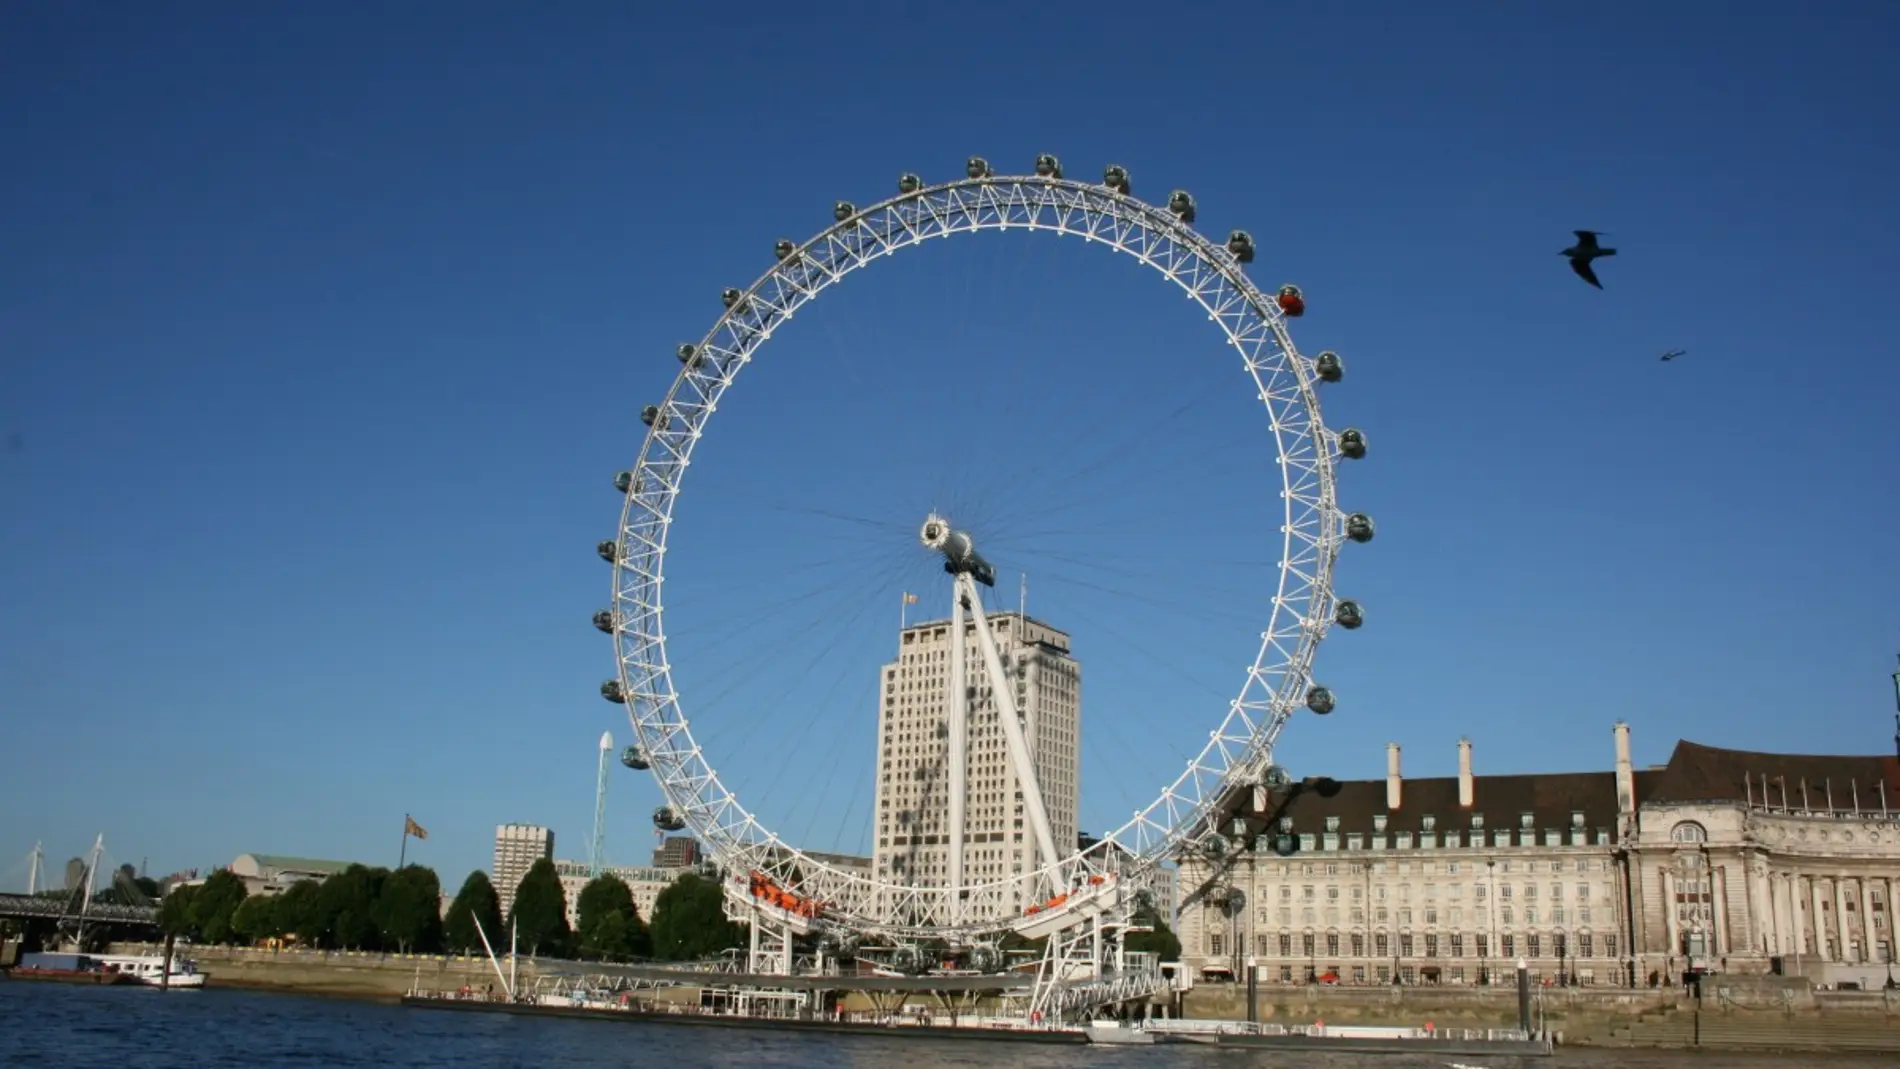 London Eye de Londres: 6 curiosidades que probablemente no conocías